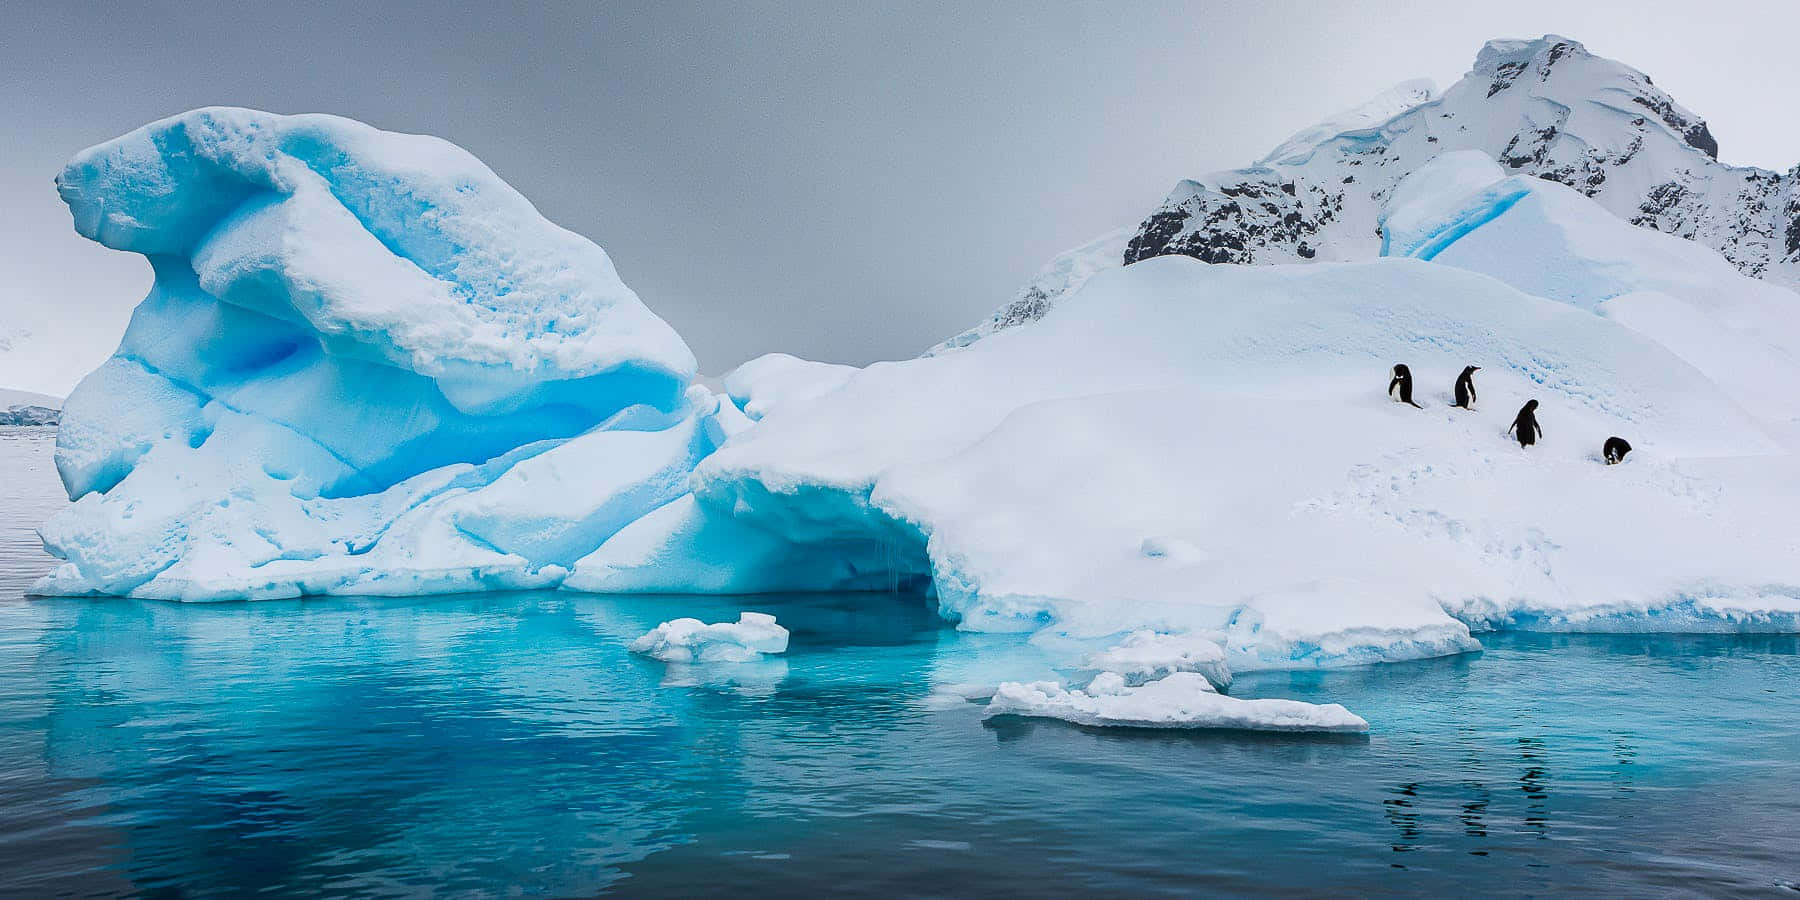 Etfredeligt Vinterscene I Antarktis